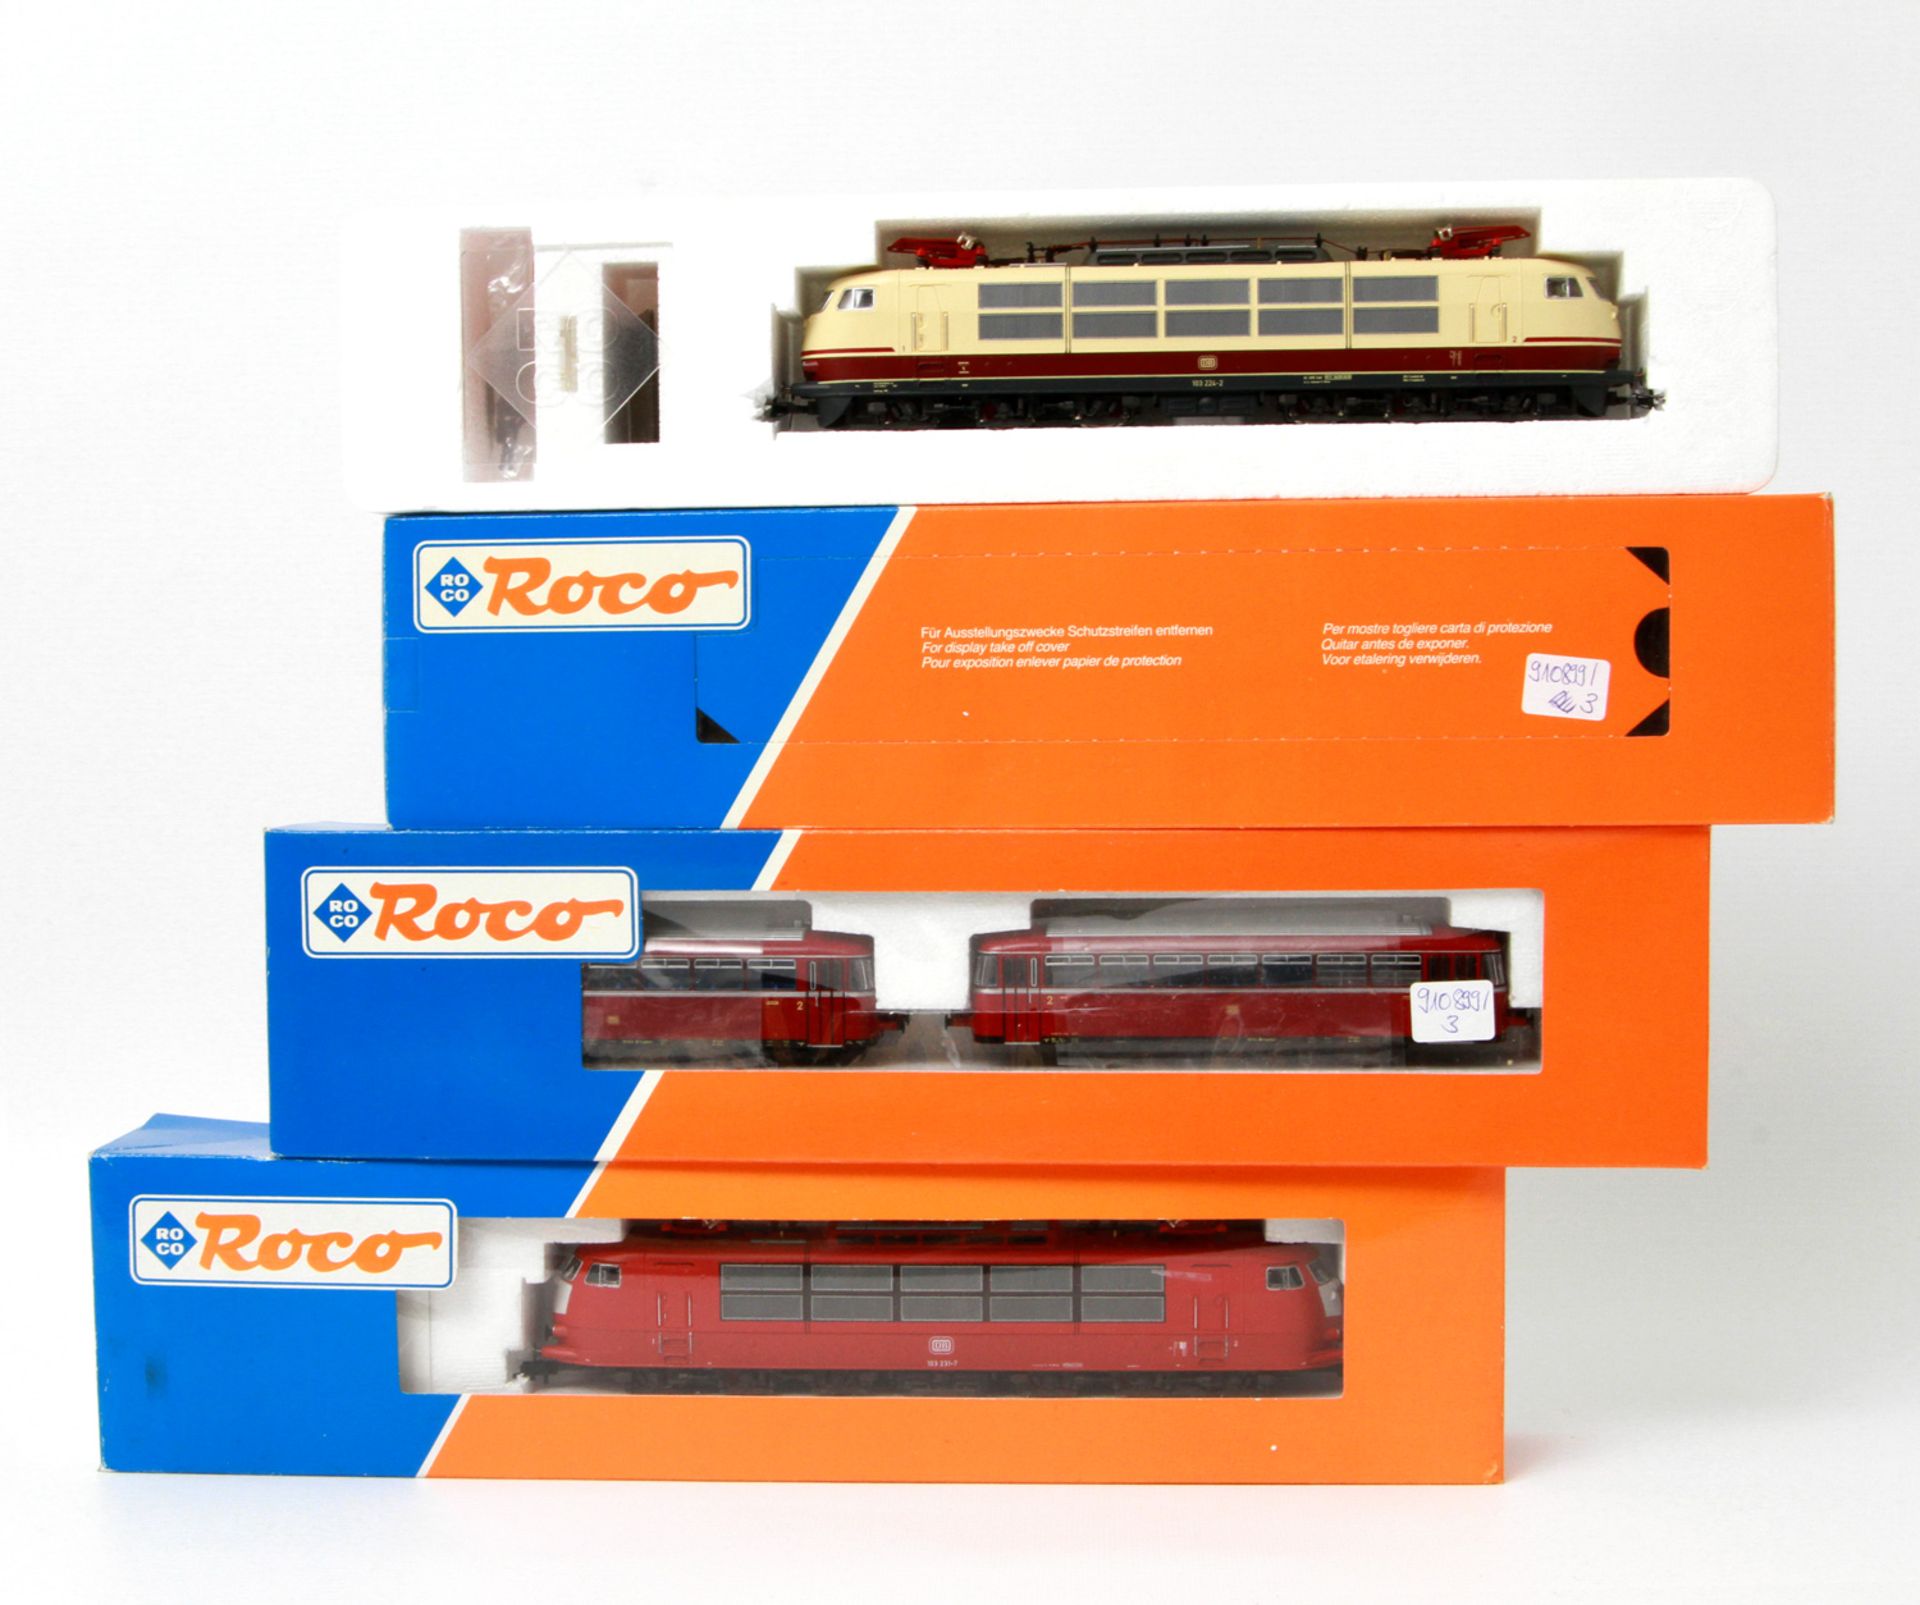 ROCO zwei E-Loks und ein Schienenbus 43619/ 43442/ 43018, Spur H0, bestehend aus E-Lok 43619: BN 103